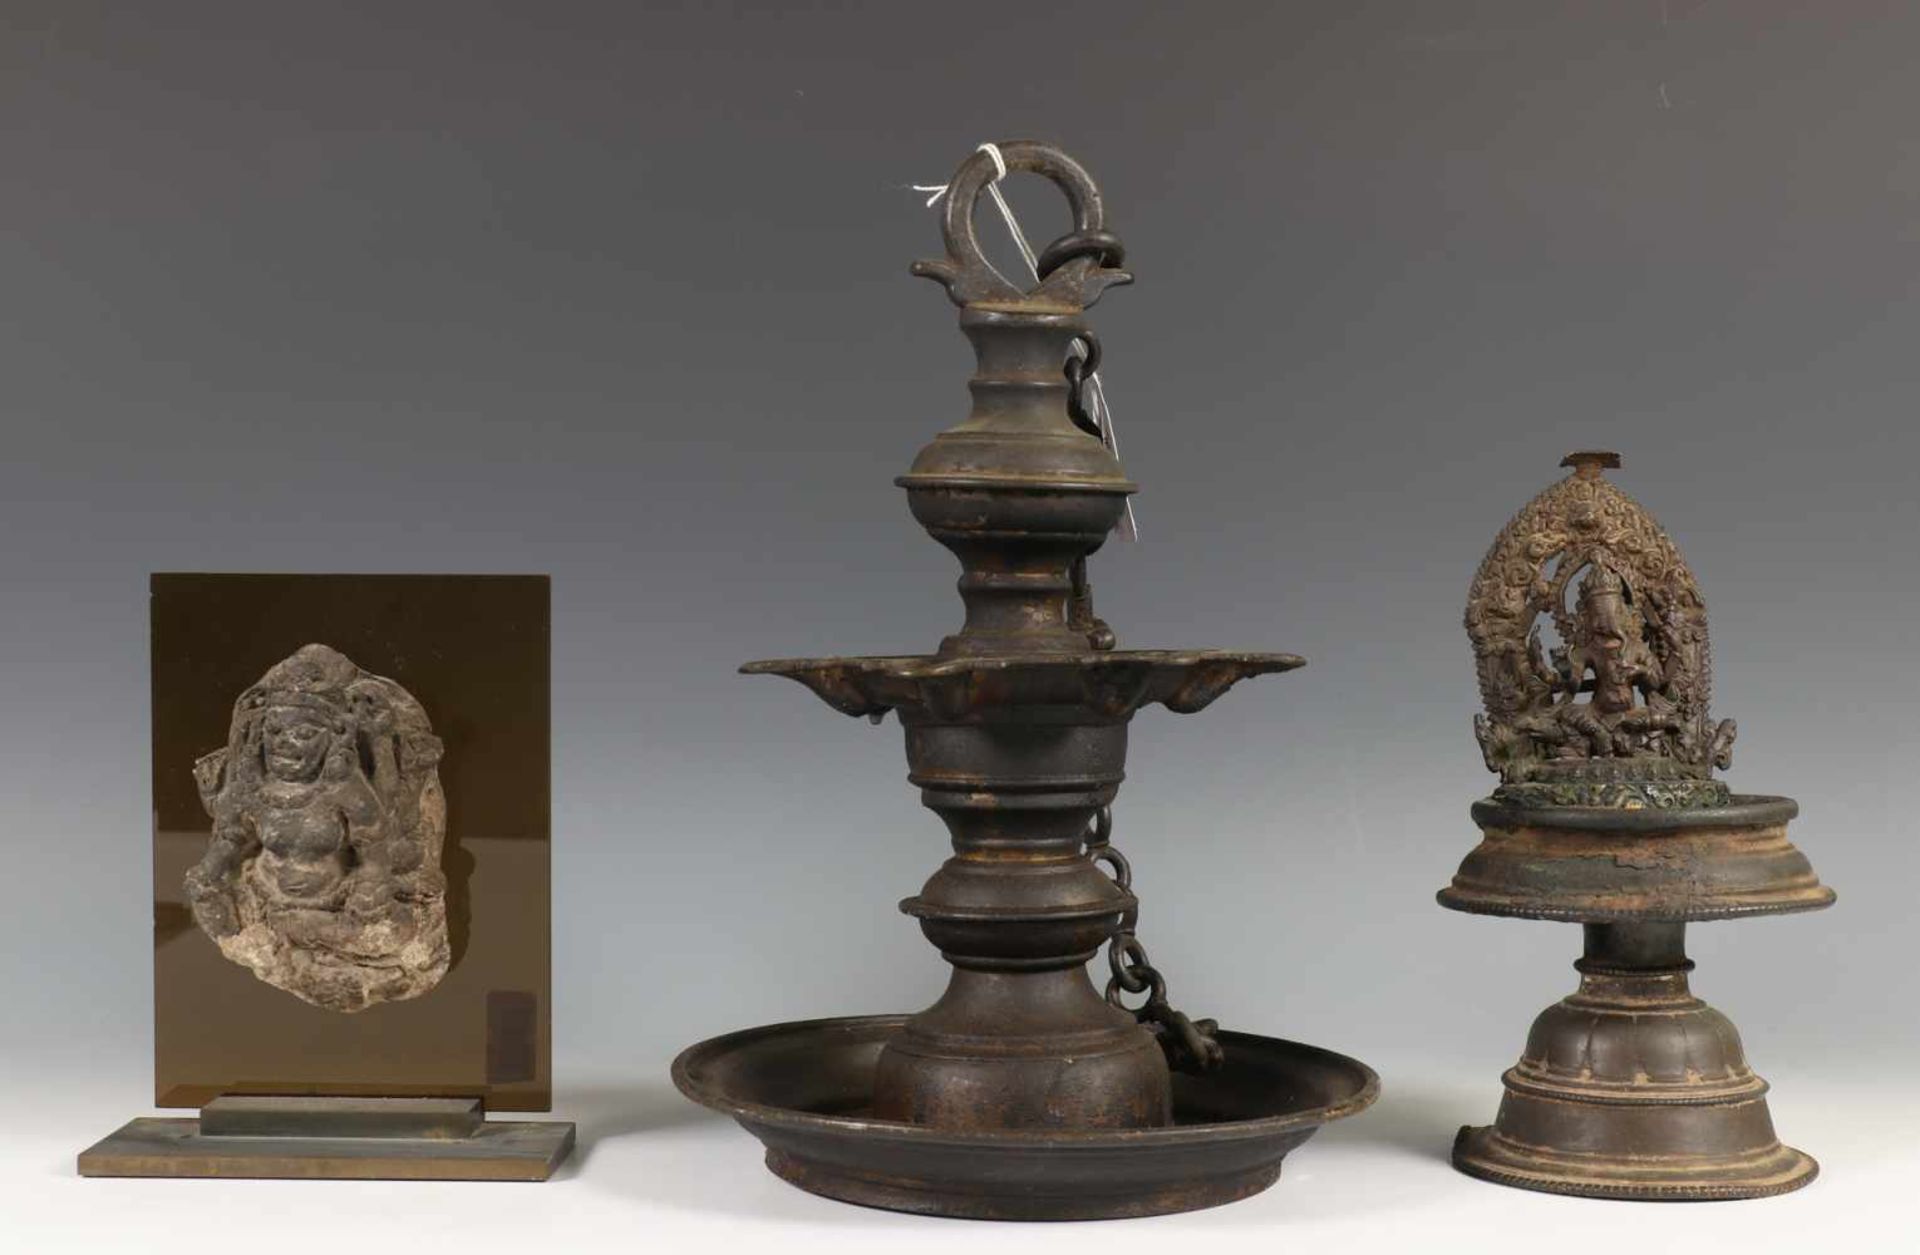 Indonesie, vulkaan stenen ornament en India, twee bronzen olielampeneen met Ganesha versierd,